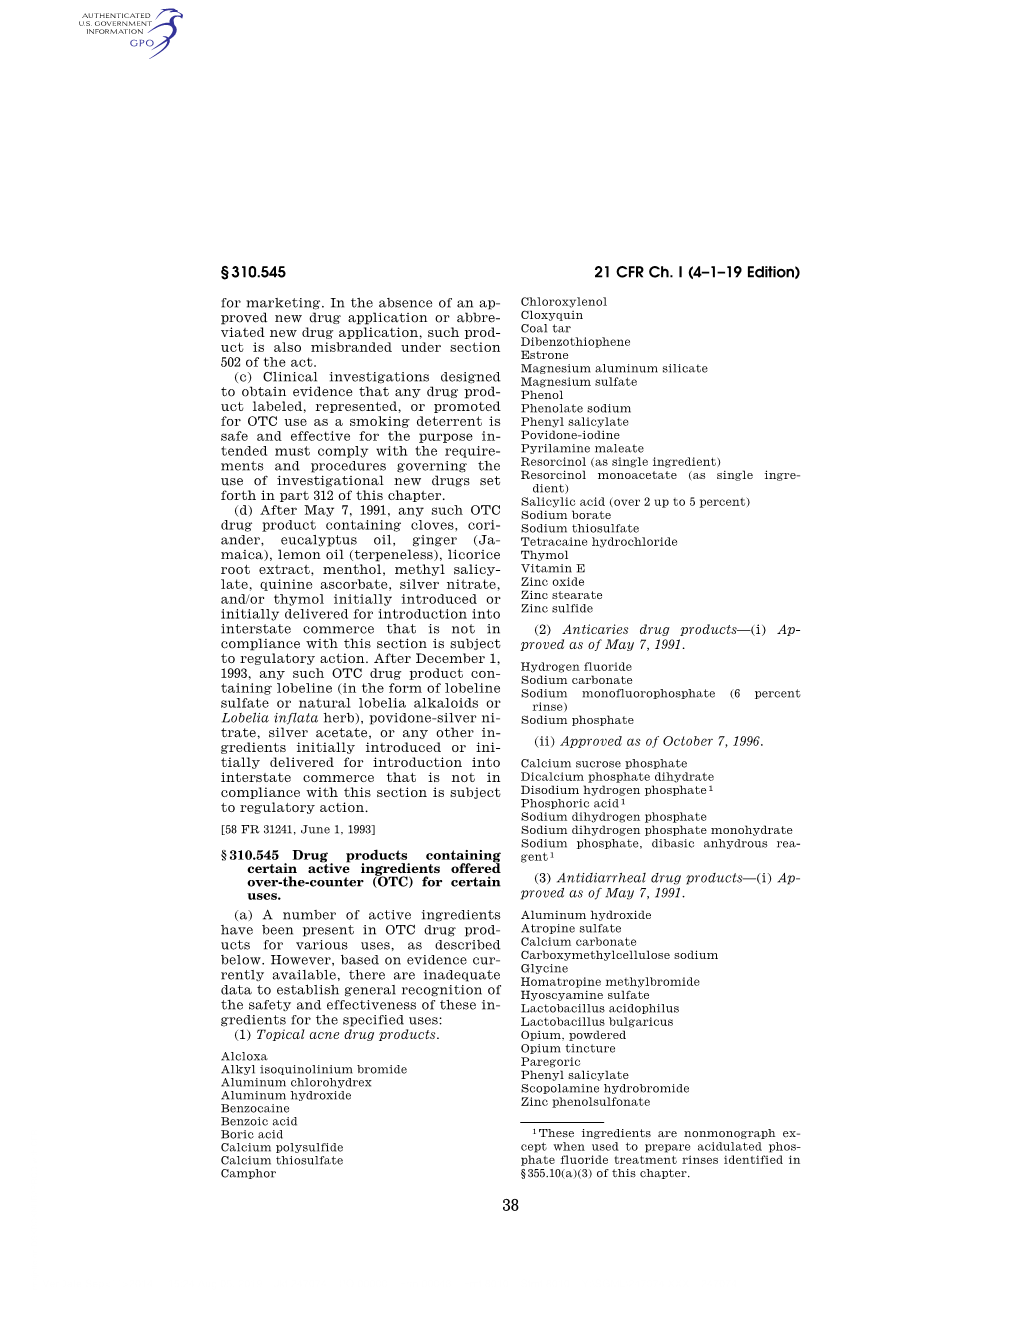 21 CFR Ch. I (4–1–19 Edition) § 310.545